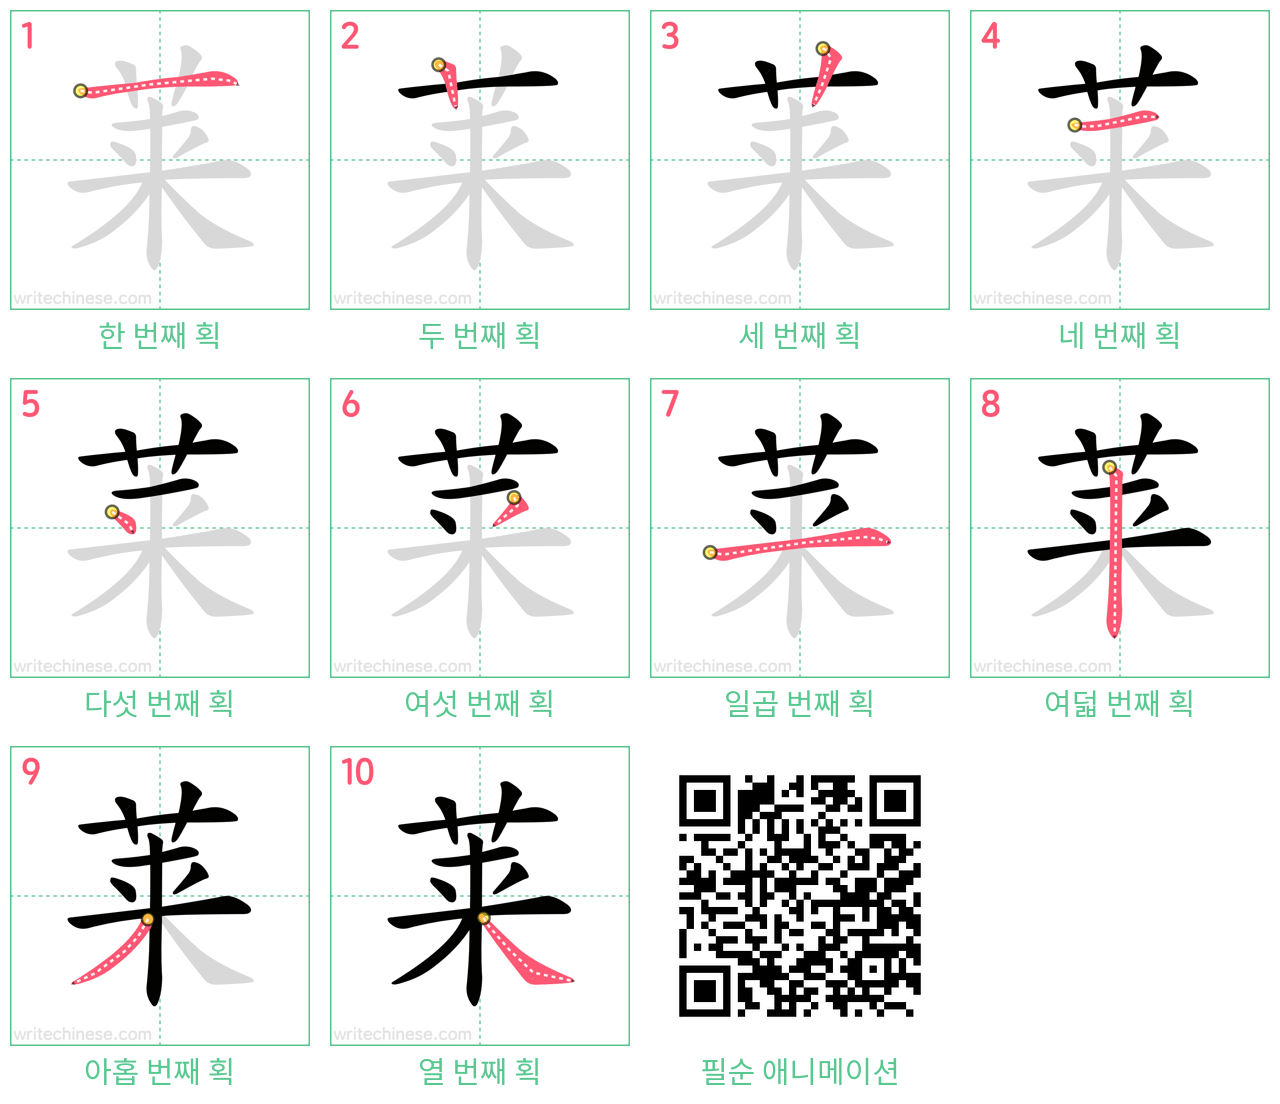 莱 step-by-step stroke order diagrams